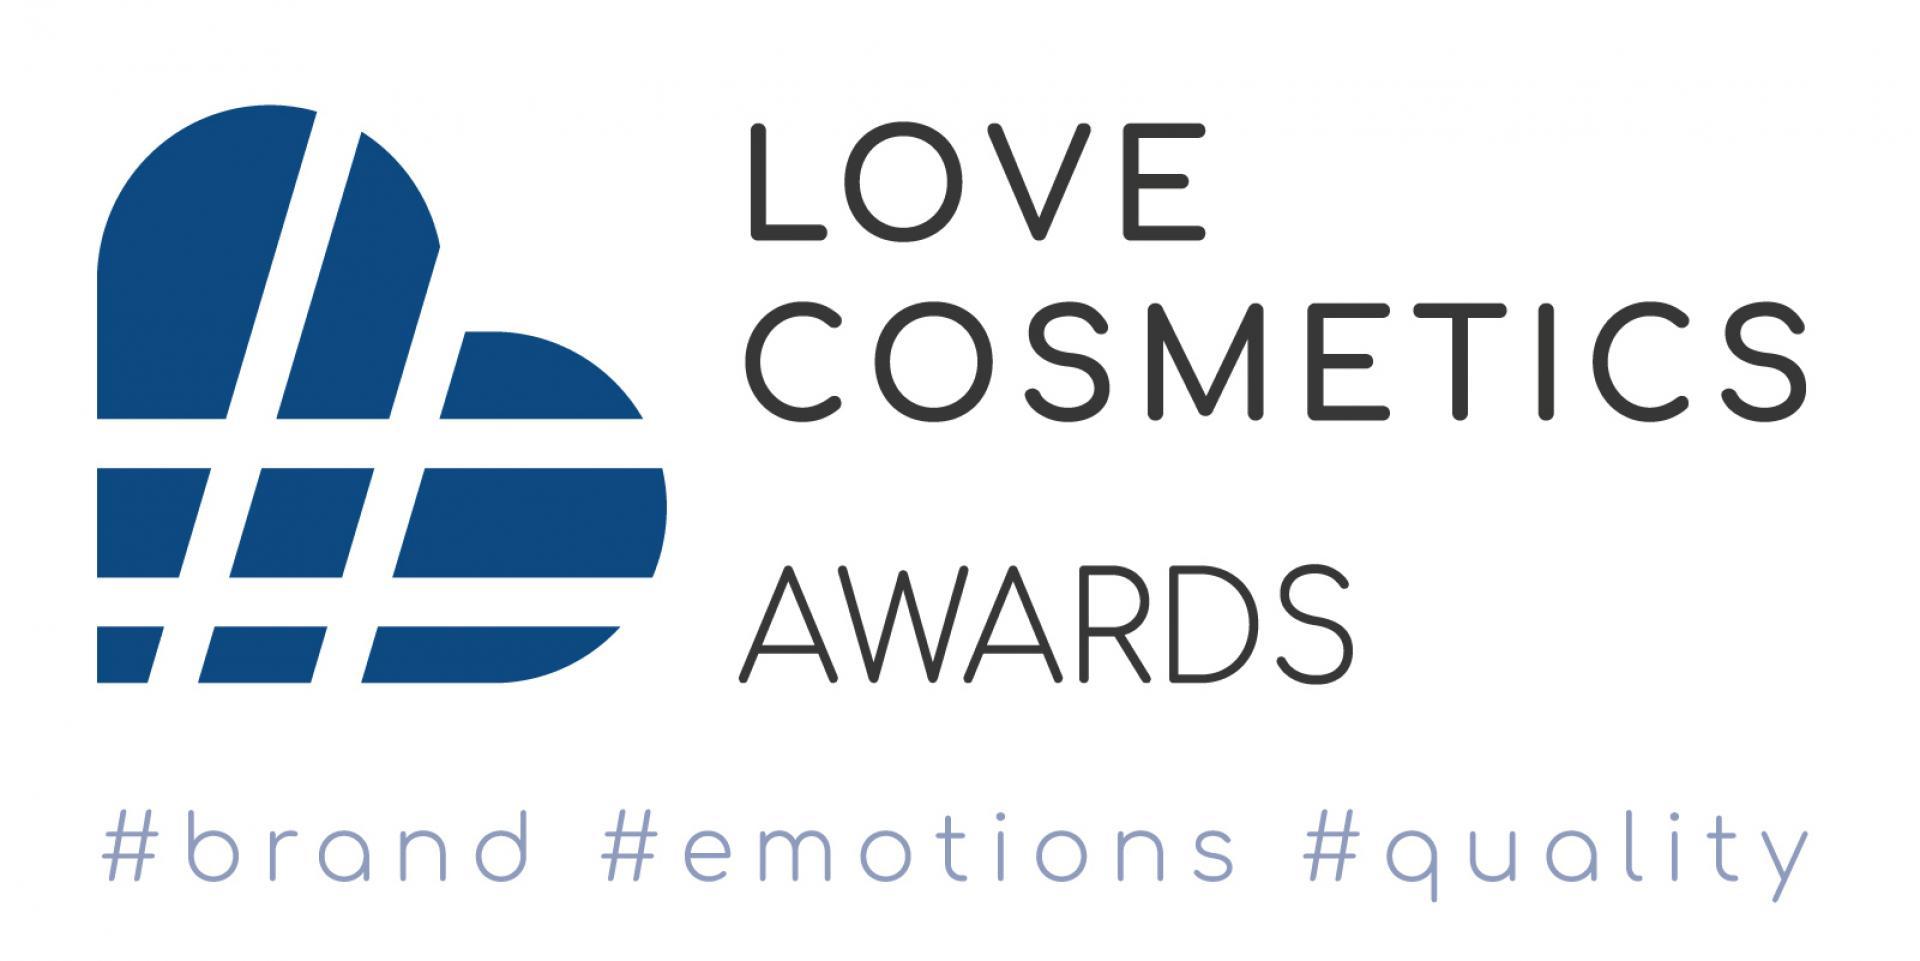 Love Cosmetics Awards 2022 - poznaj regulamin